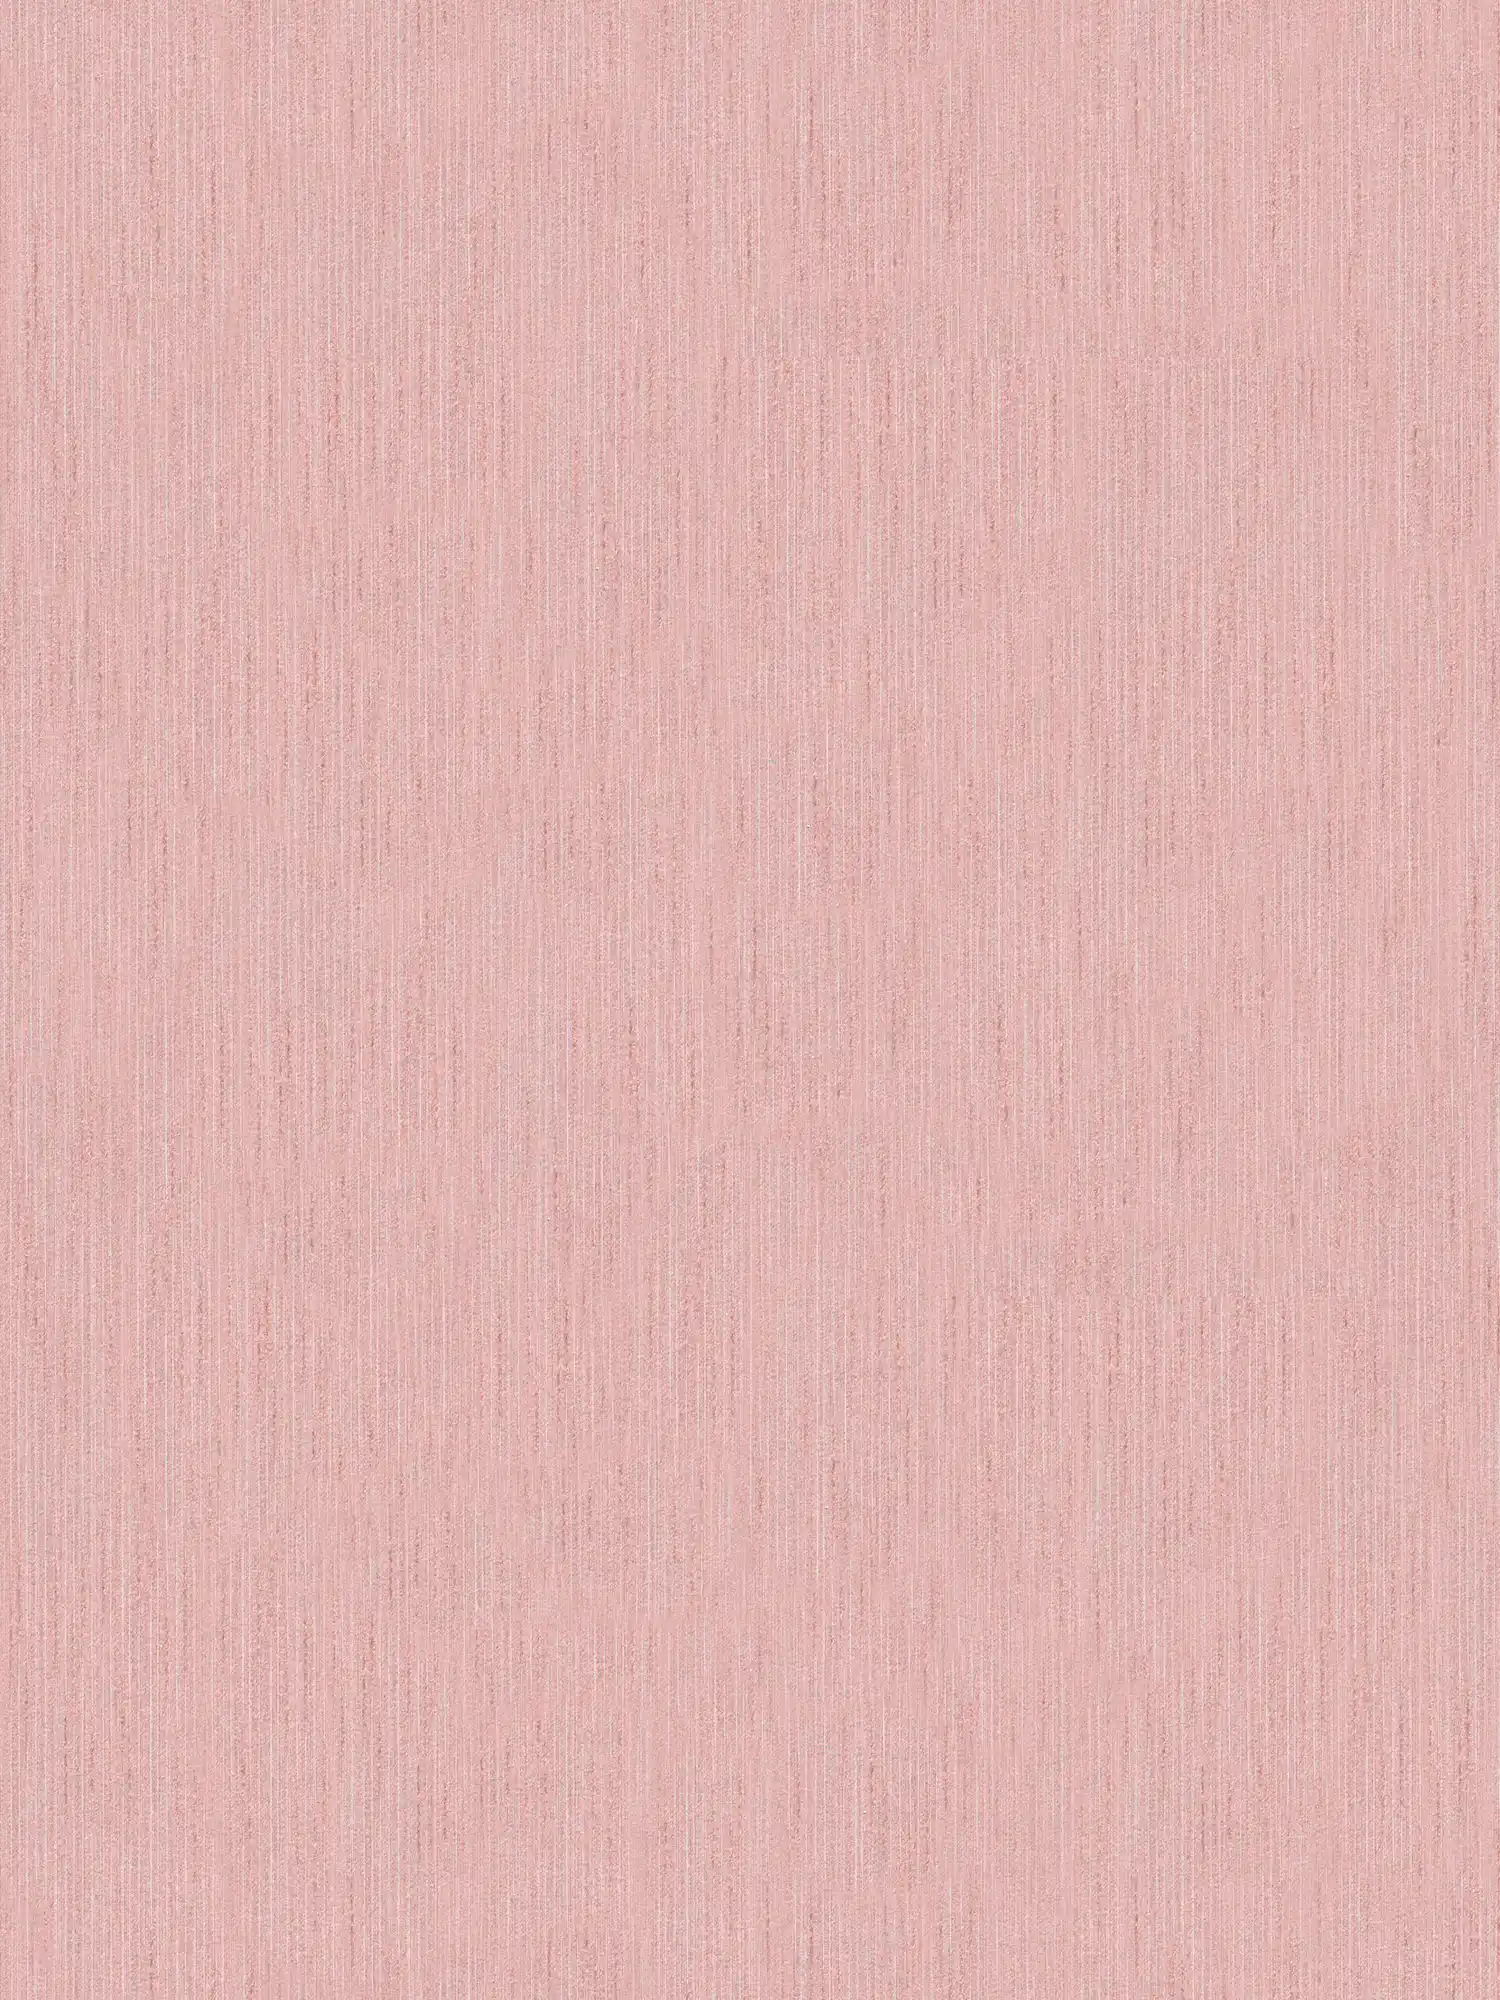 Papel pintado rosa viejo moteado con efecto de textura
